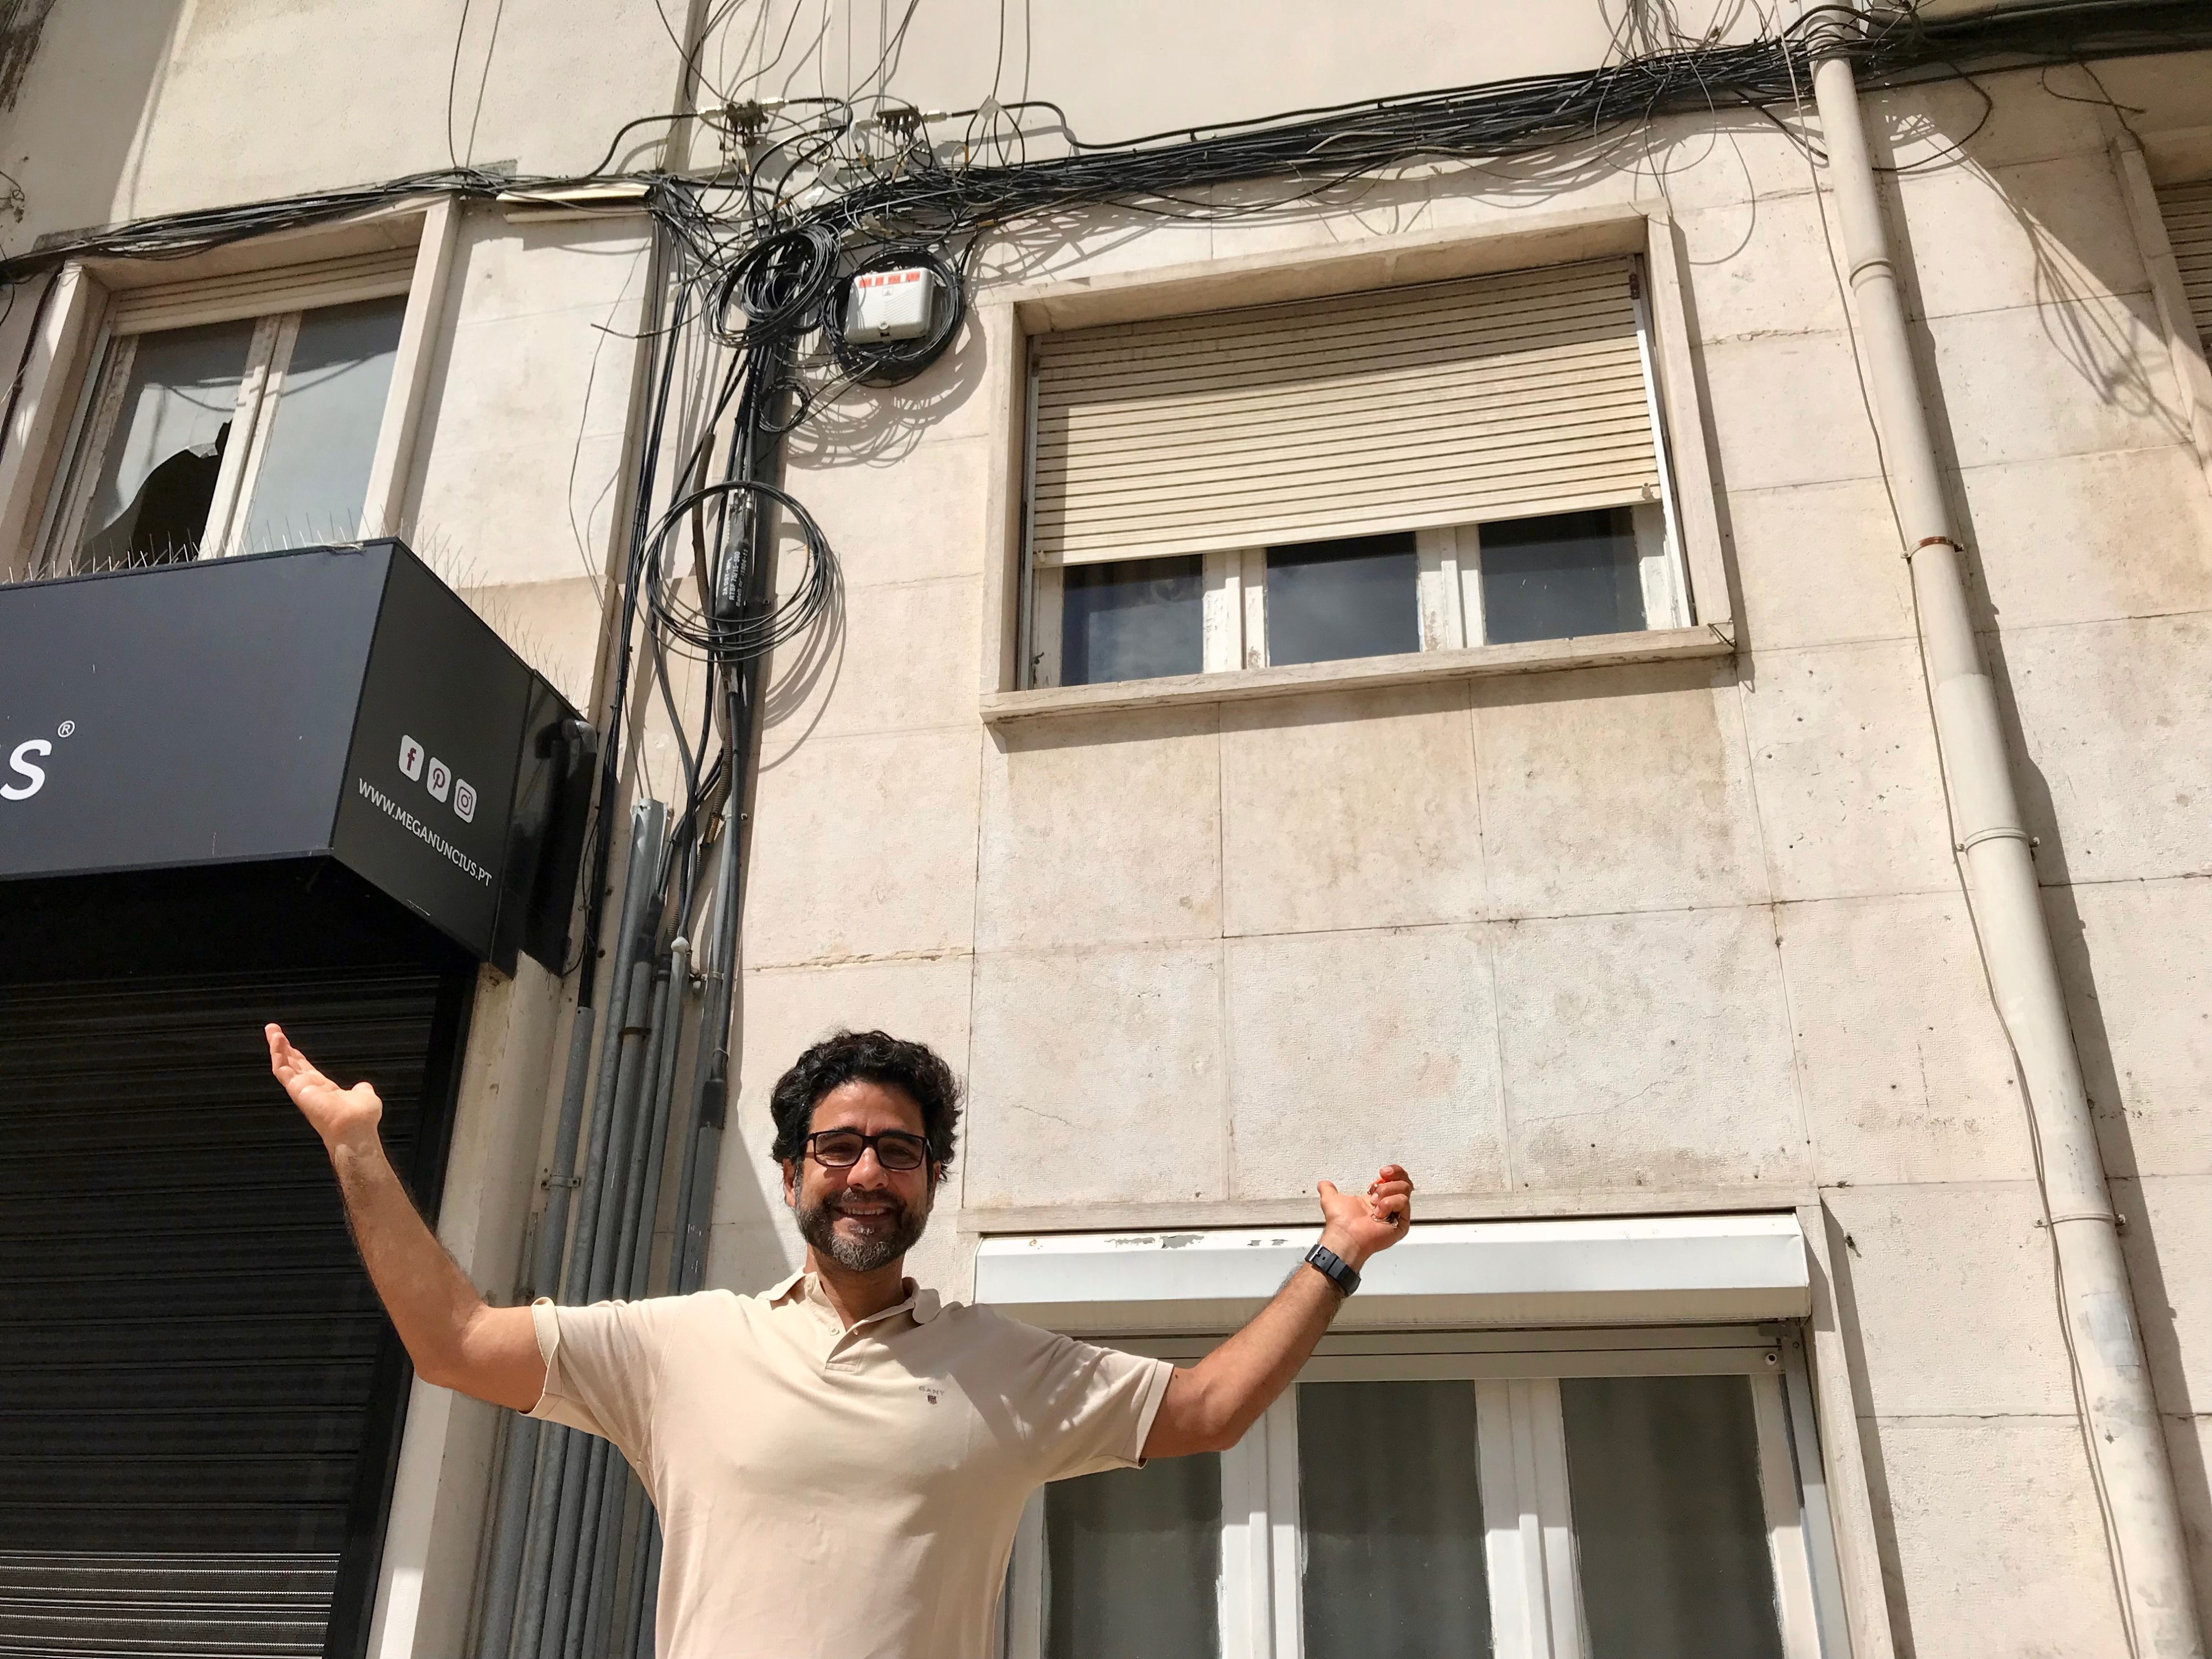 José quer limpar as fachadas dos nossos prédios dos cabos de telecomunicações